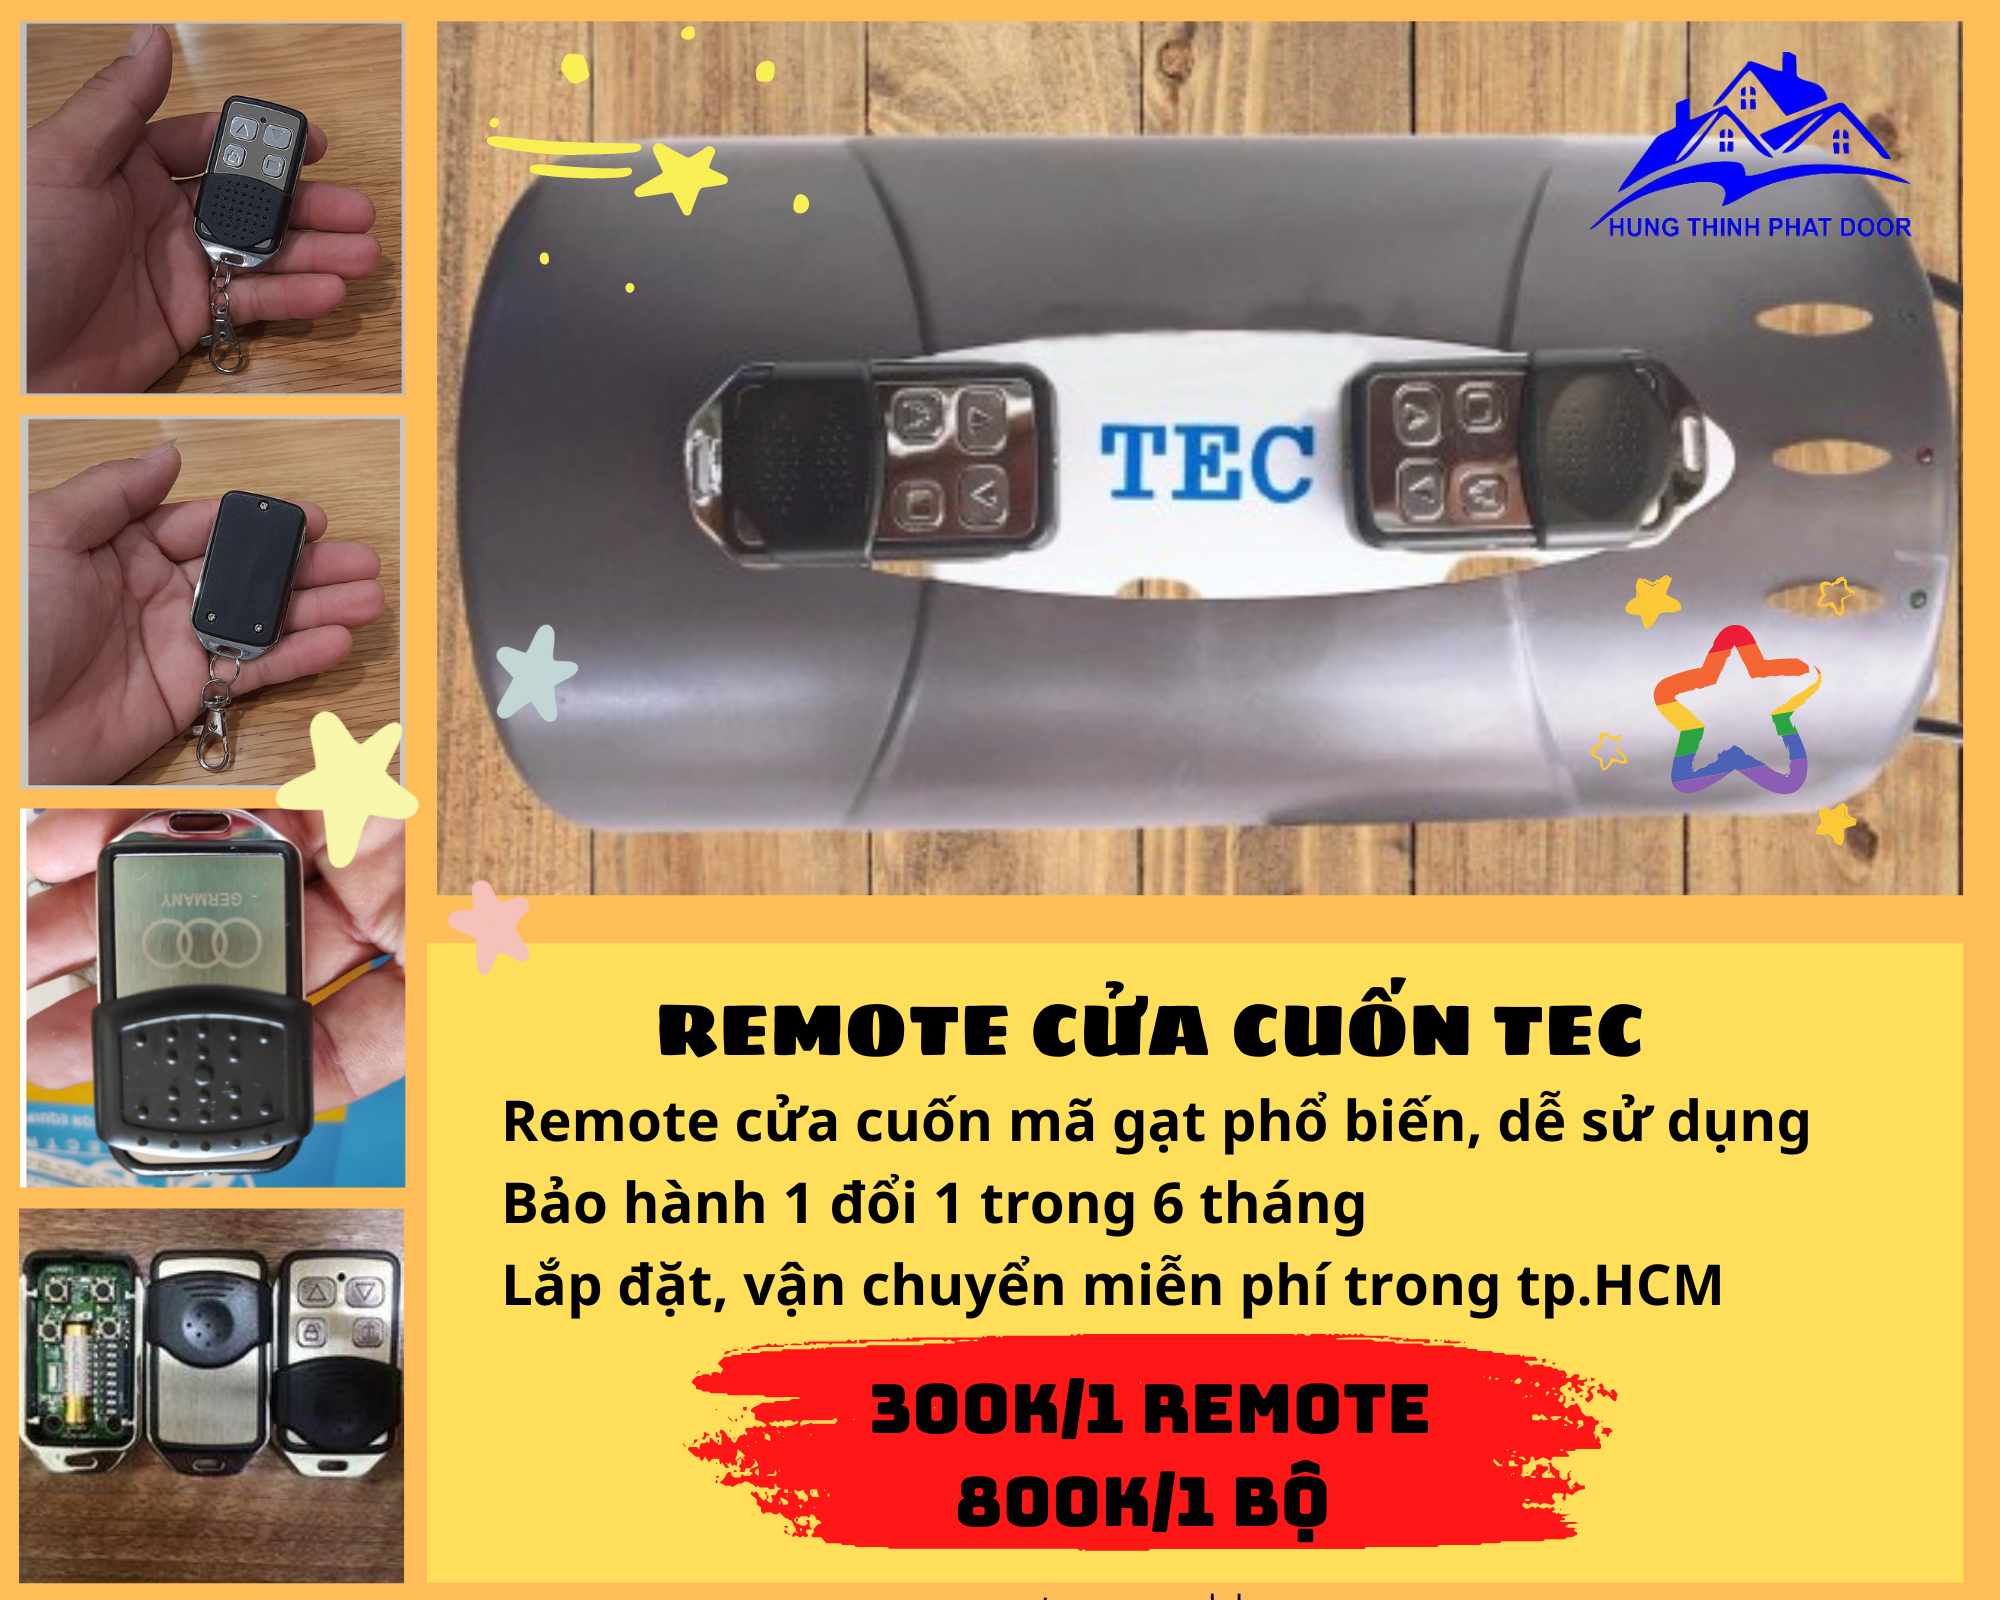 Remote Cửa Cuốn TEC – Nhập Khẩu Từ Đài Loan